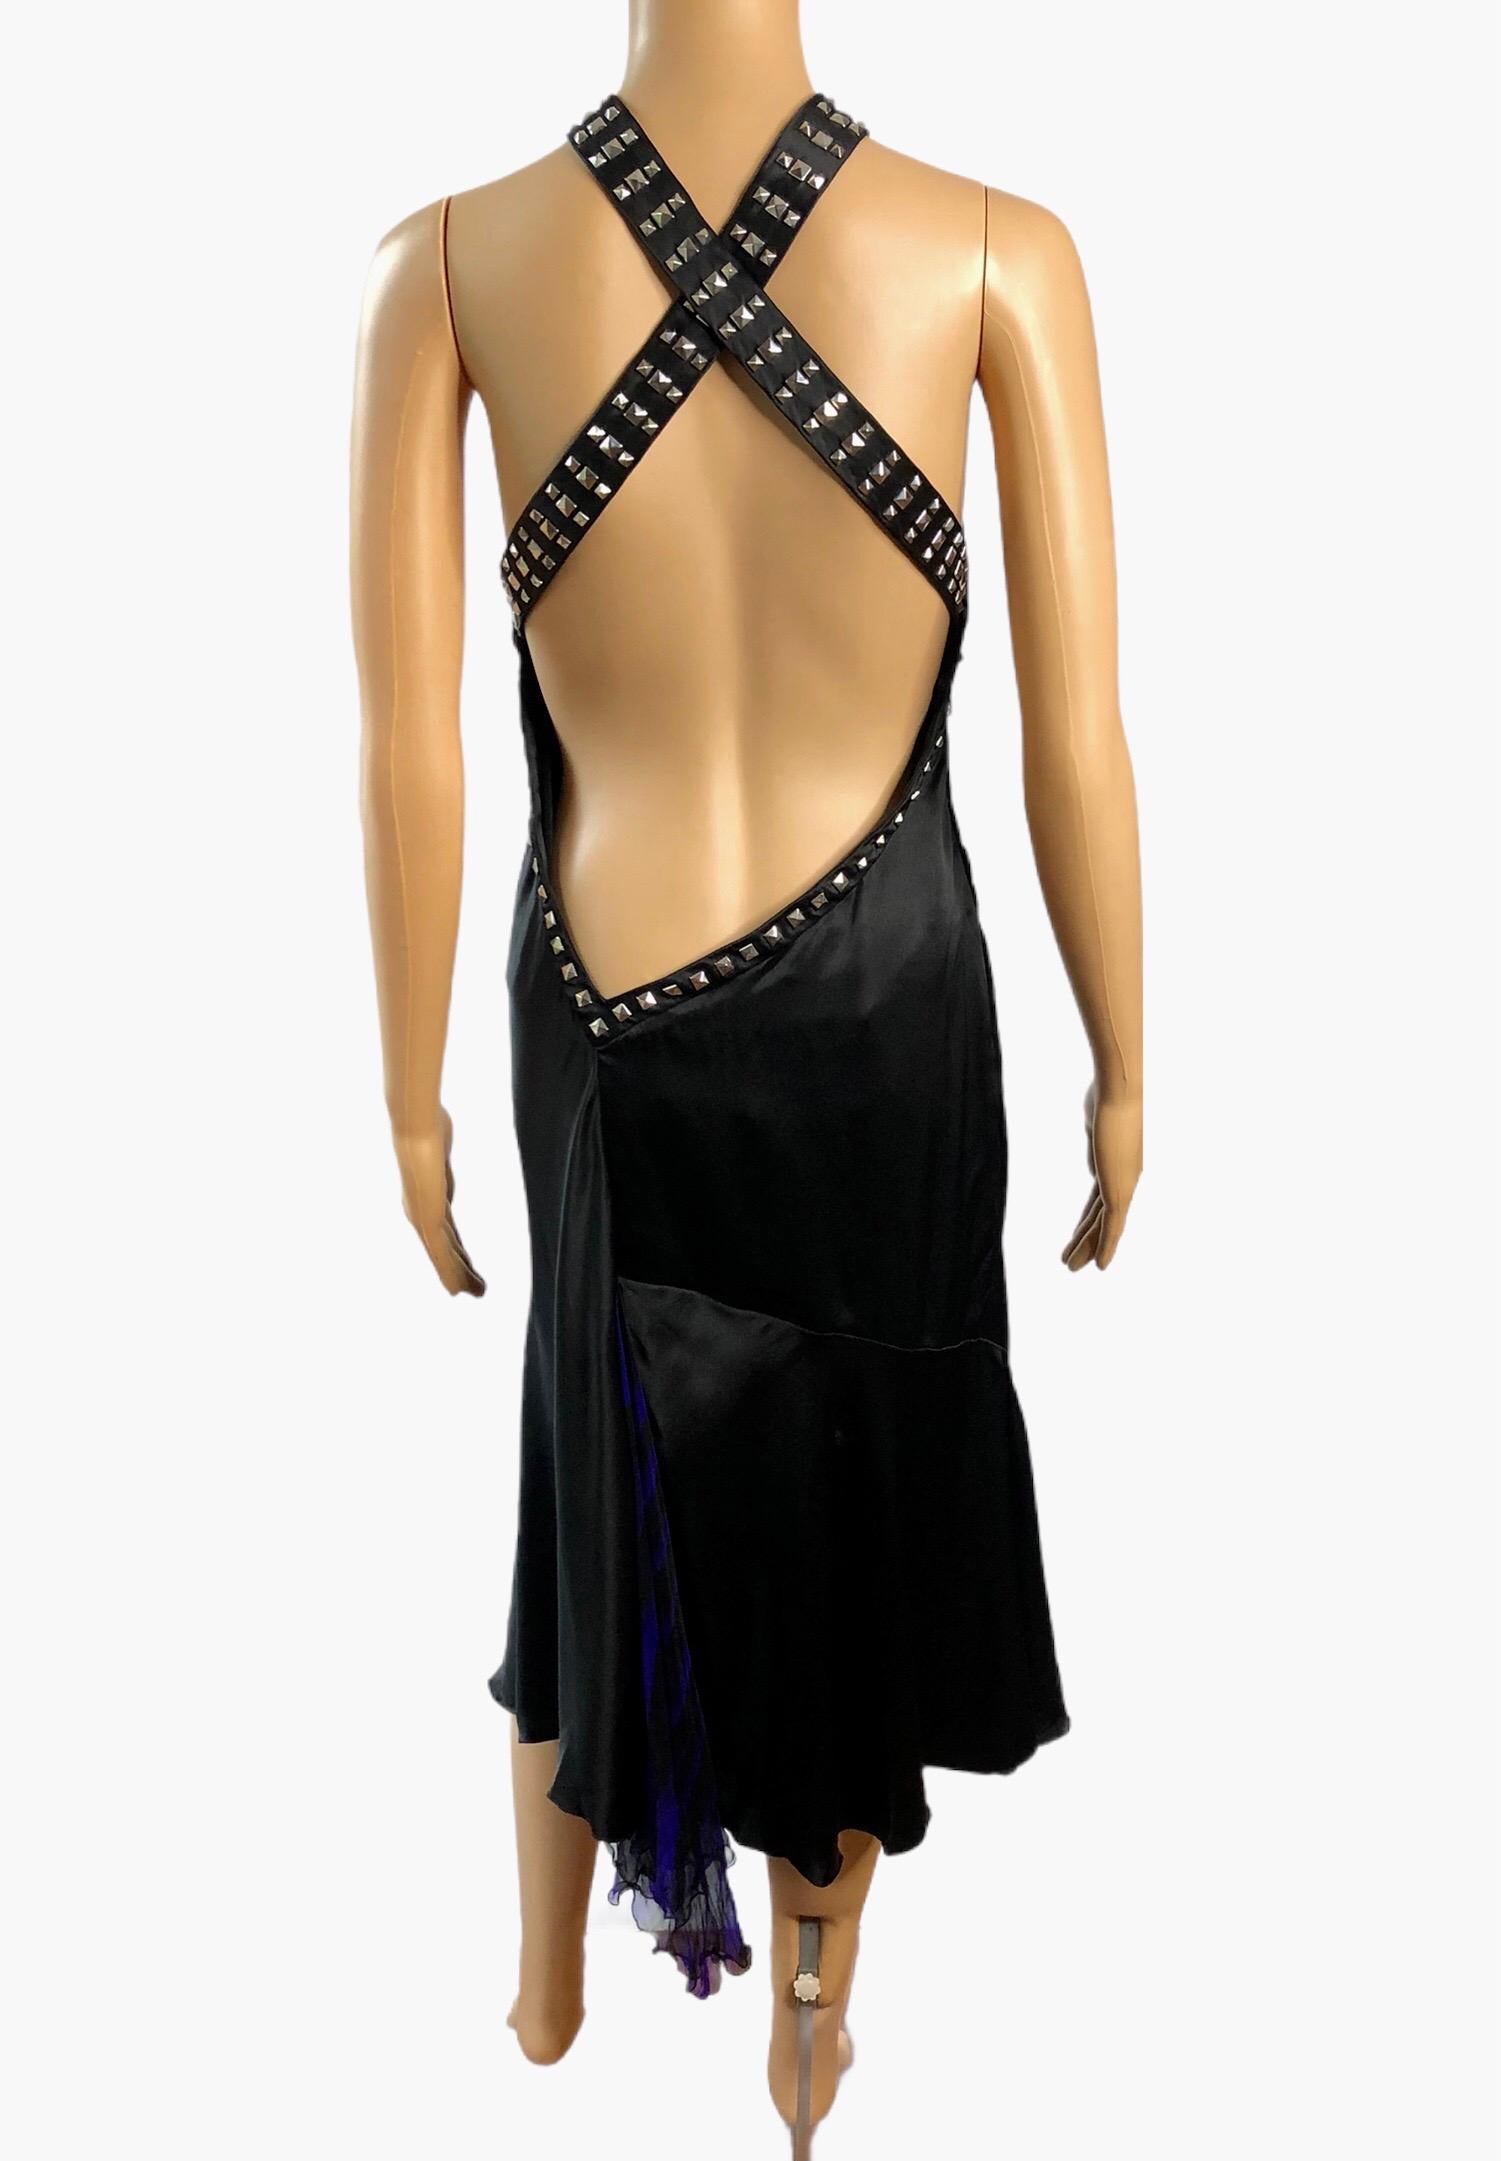 Versace F/W 2004 Verschönertes Nietenhalsband Tiefausschnitt Schlüssellochausschnitt offener Rücken Kleid IT 42

Schwarzes Seidenkleid von Versace mit quadratischen silbernen Nieten, tiefem Neckholder-Ausschnitt und asymmetrischem, offenem